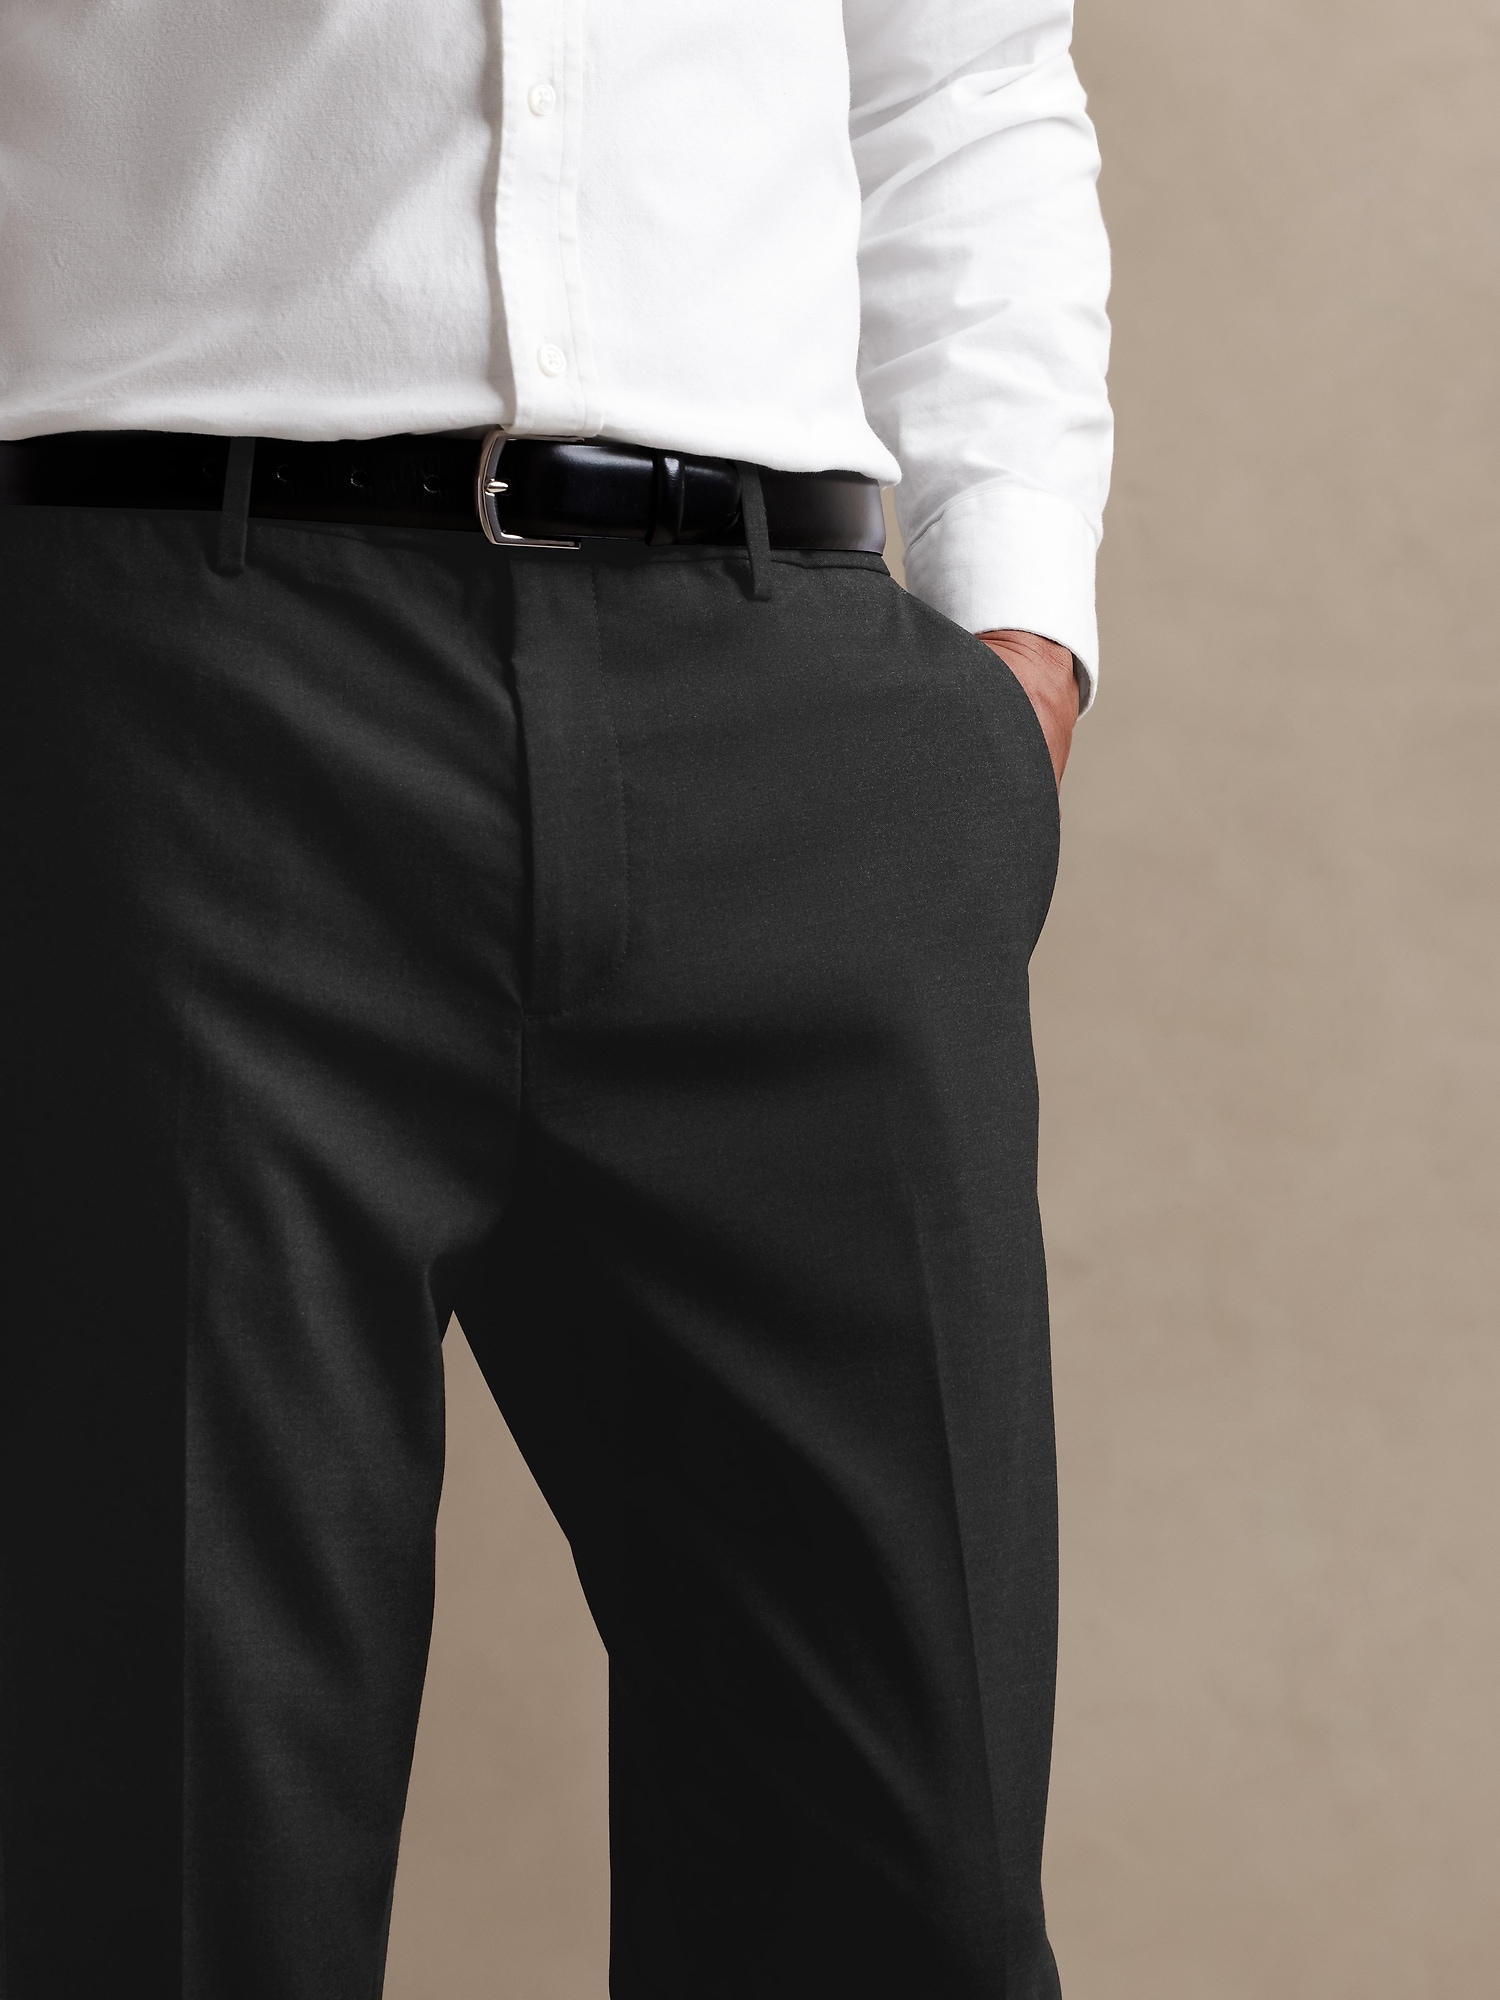 Black Formal Pants | Formal Pants for Men | Formal Trouser | SAINLY